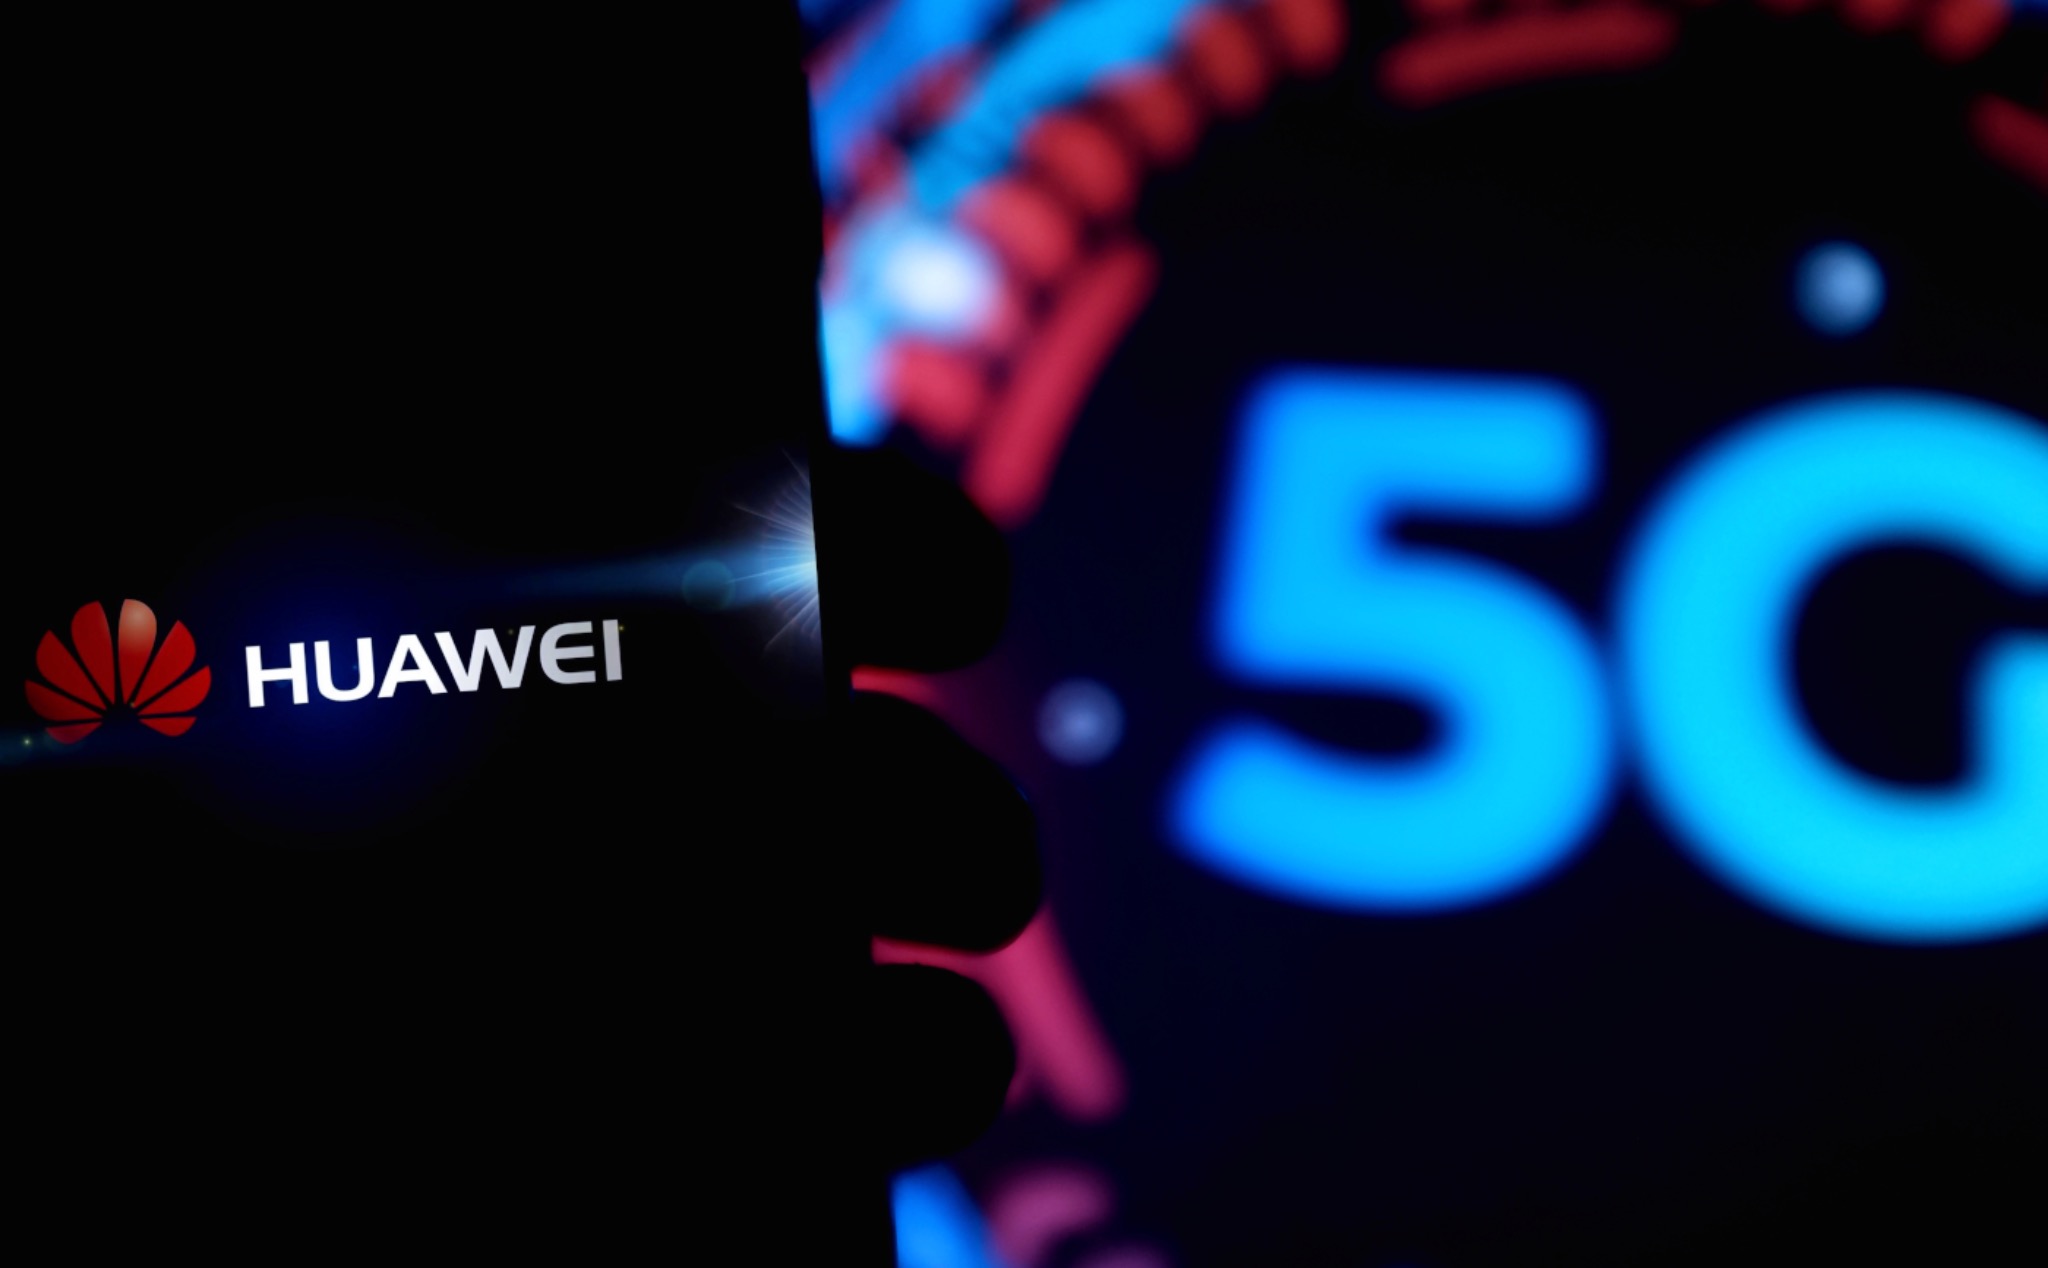 Cấm vận từ Mỹ khiến thiết bị mạng của Huawei kém an toàn, Anh không triển khai